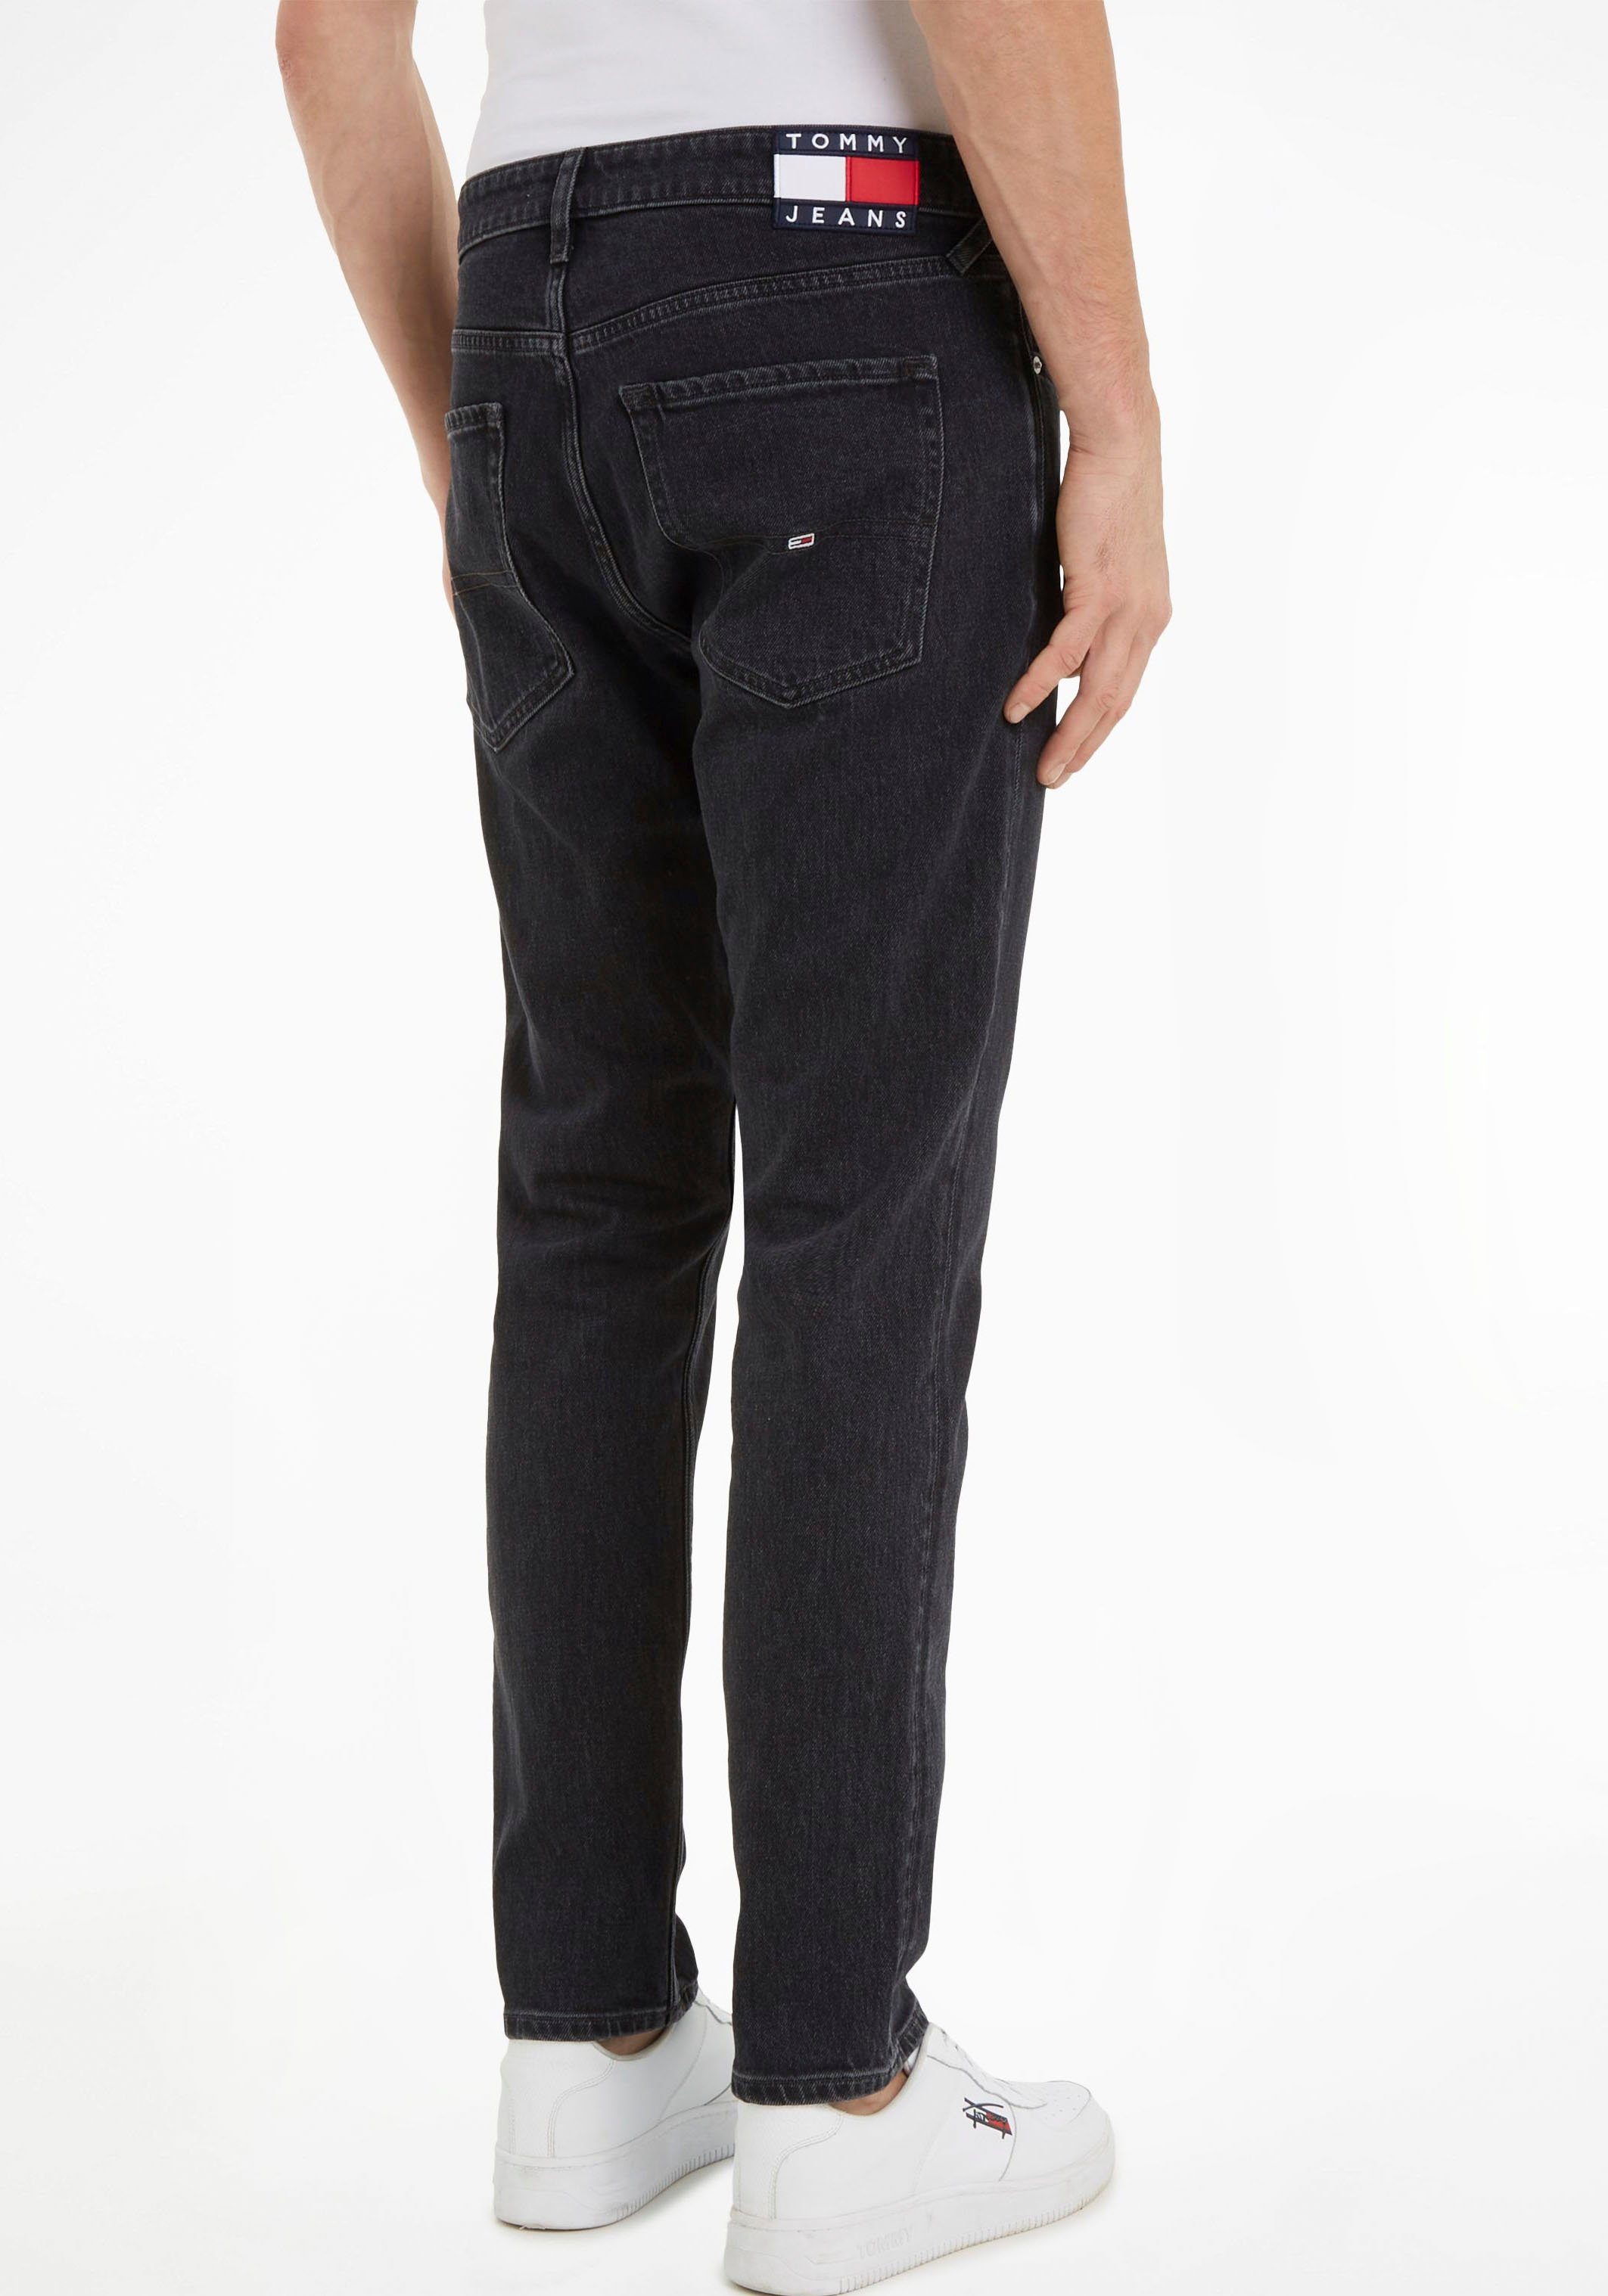 Jeans SCANTON Y Black 5-Pocket-Jeans Denim SLIM Tommy